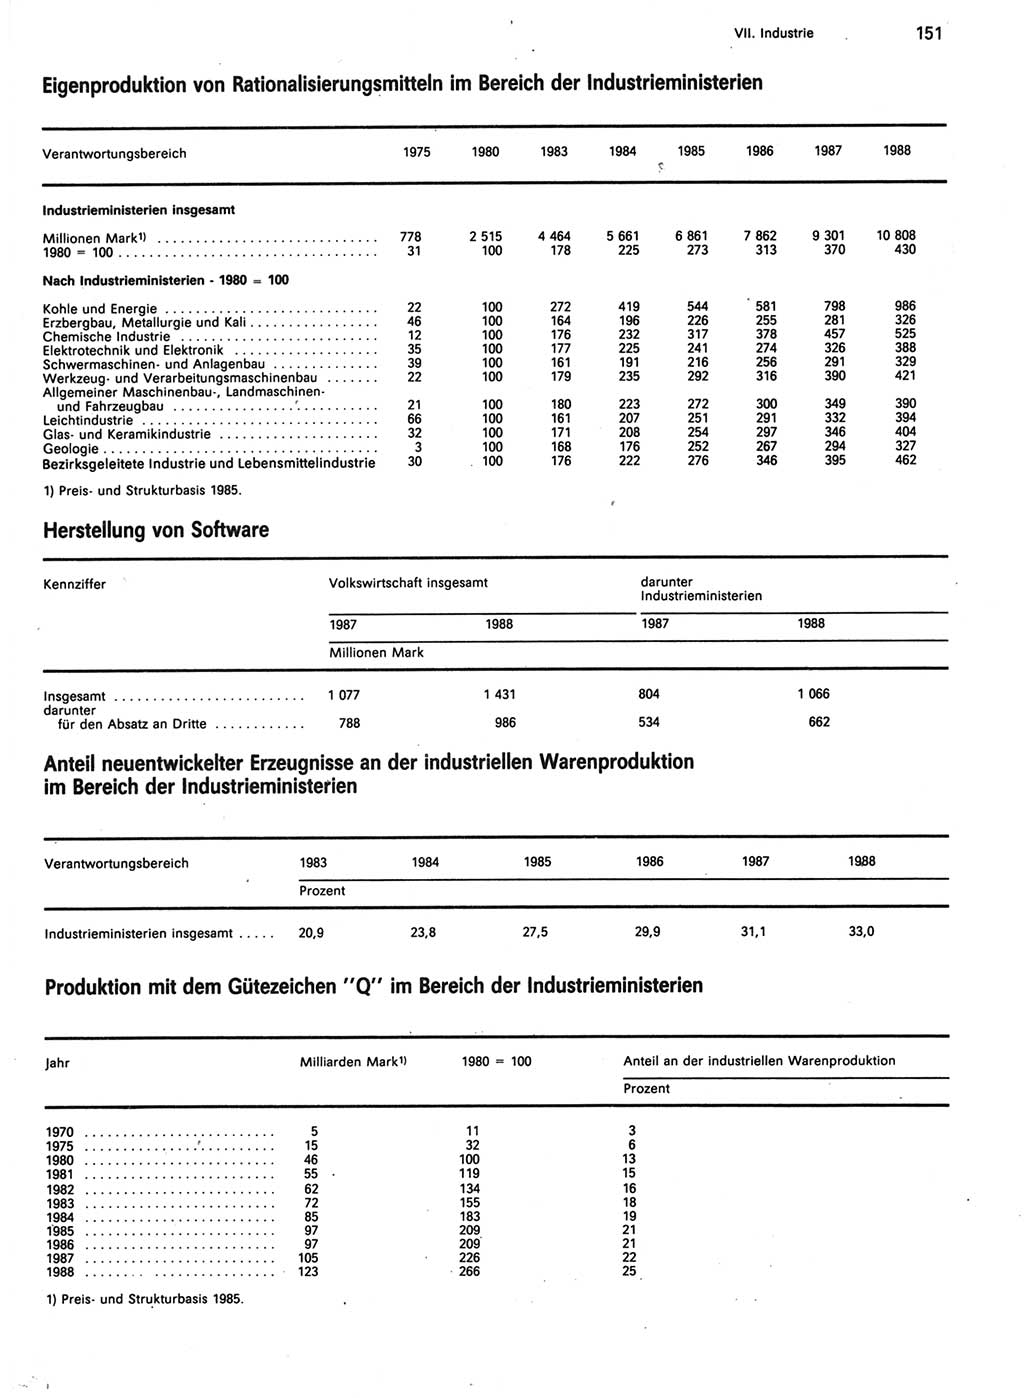 Statistisches Jahrbuch der Deutschen Demokratischen Republik (DDR) 1989, Seite 151 (Stat. Jb. DDR 1989, S. 151)